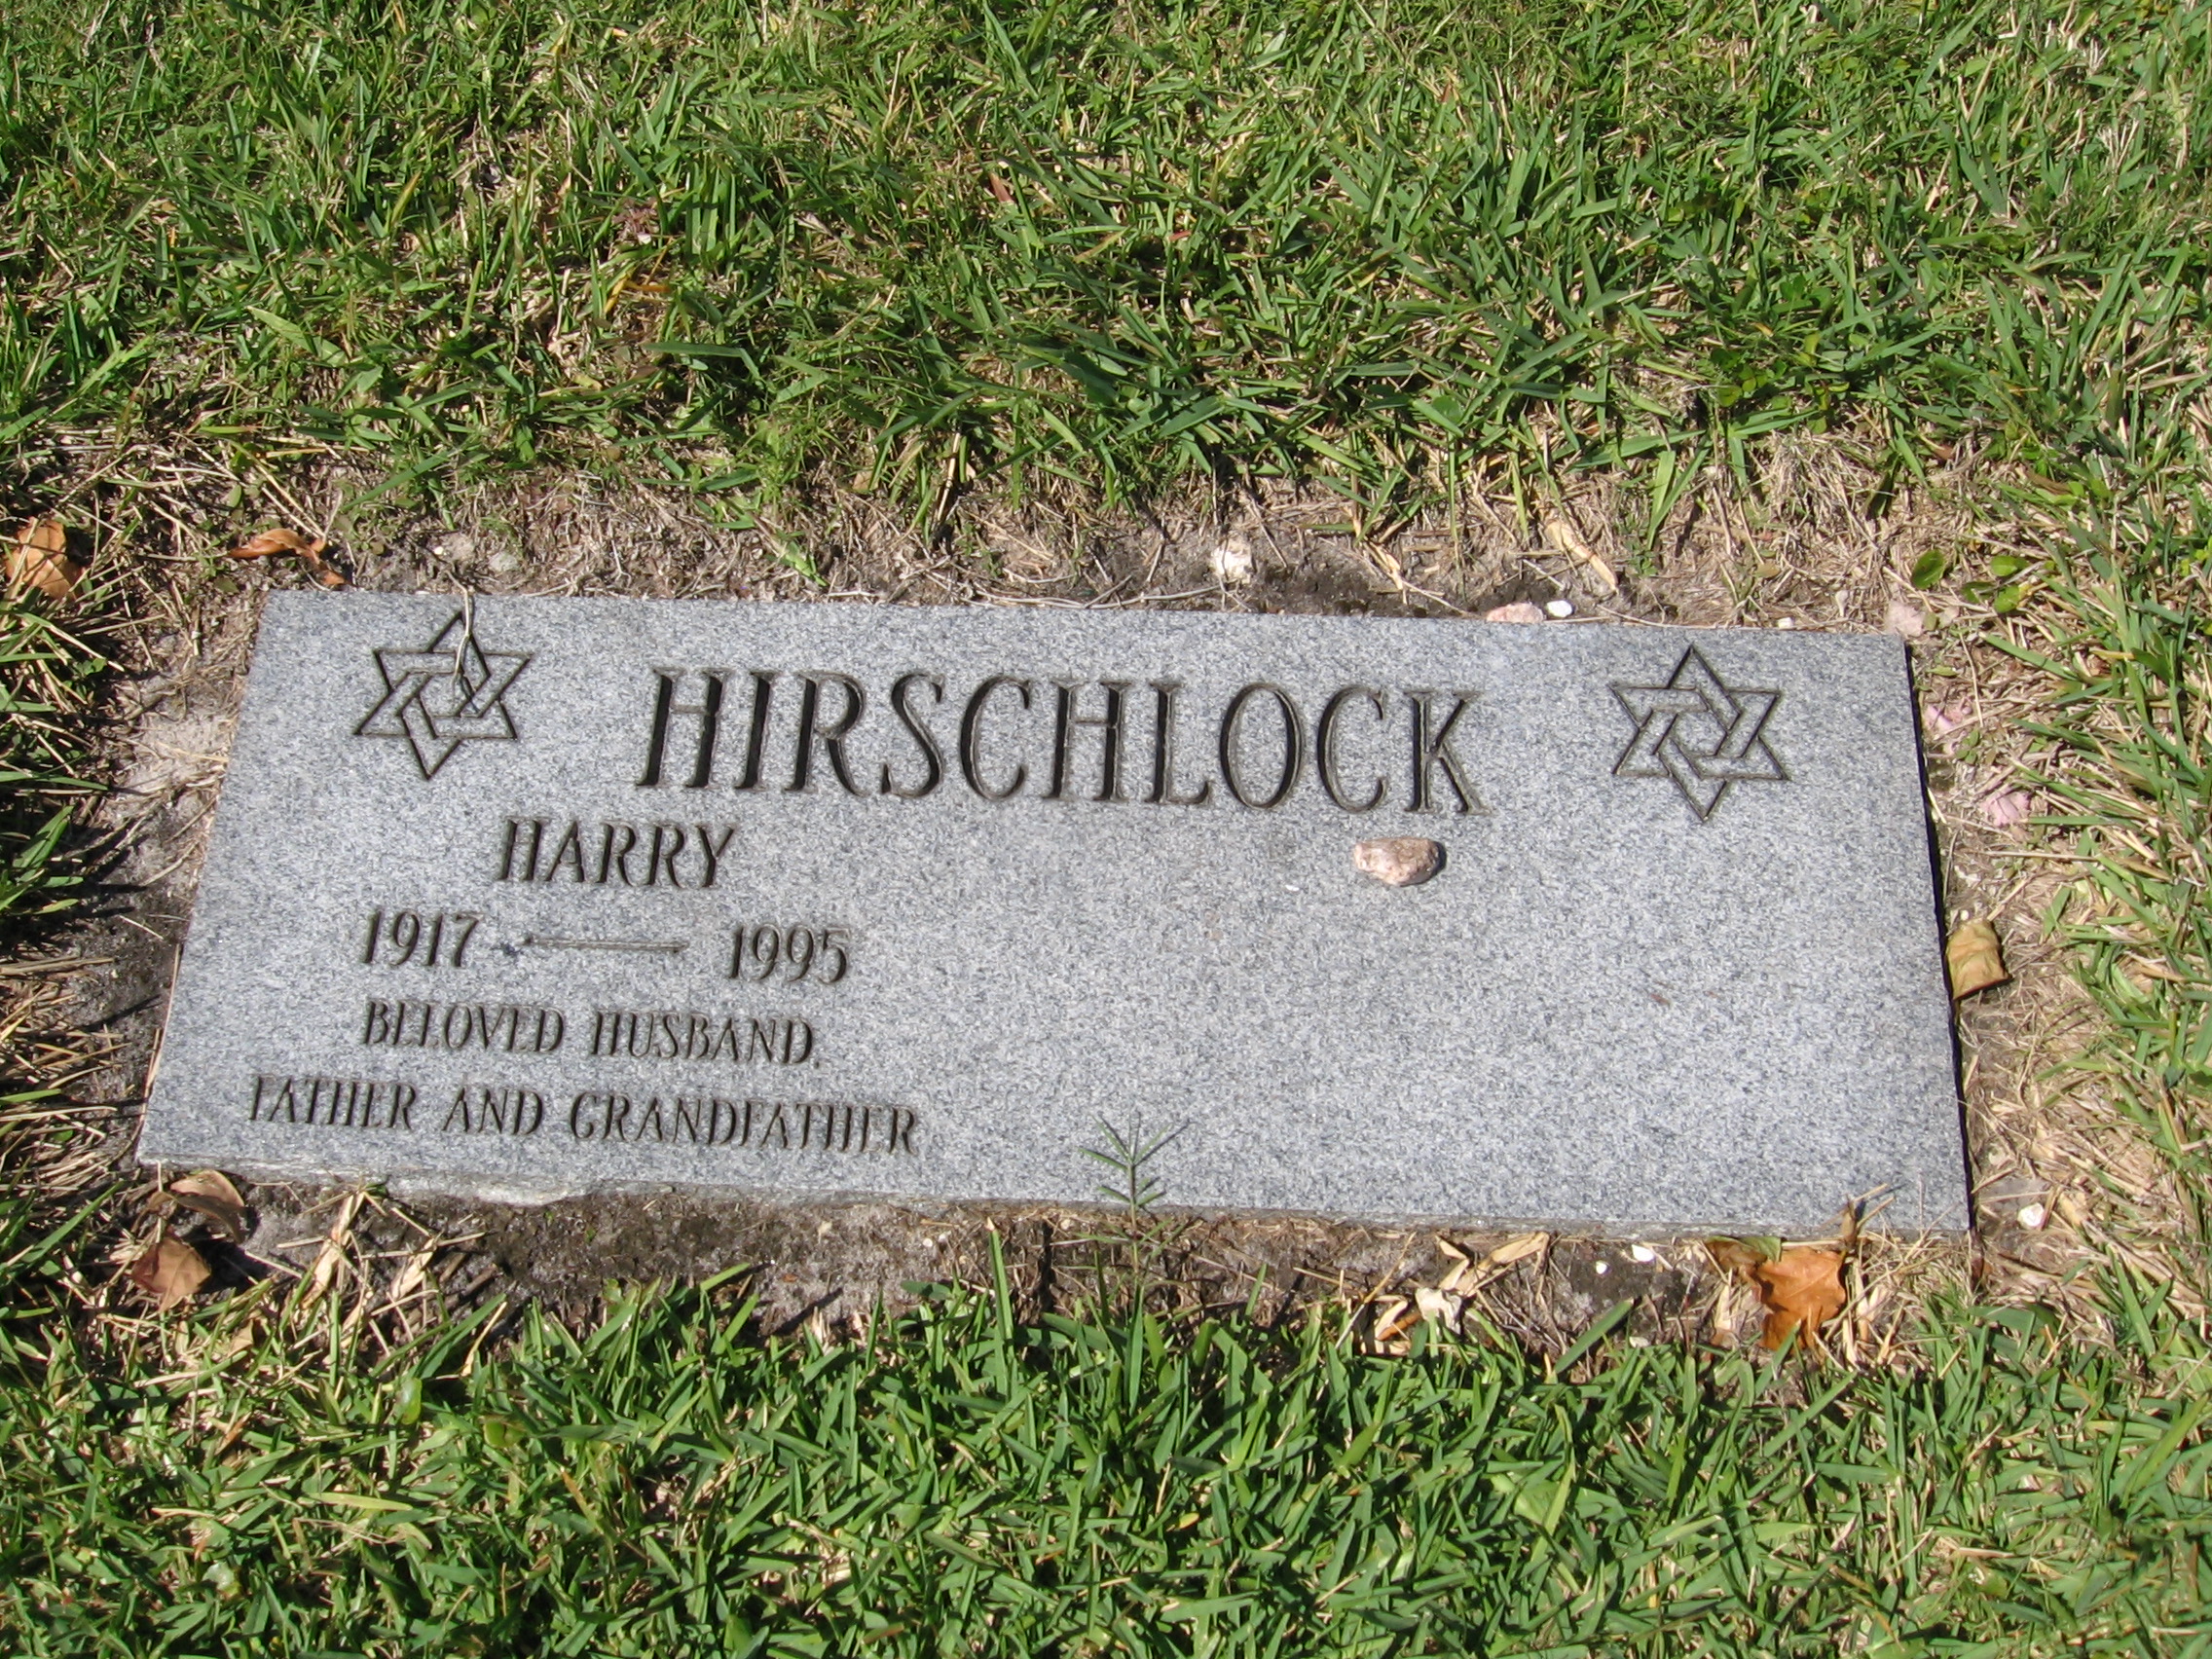 Harry Hirschlock